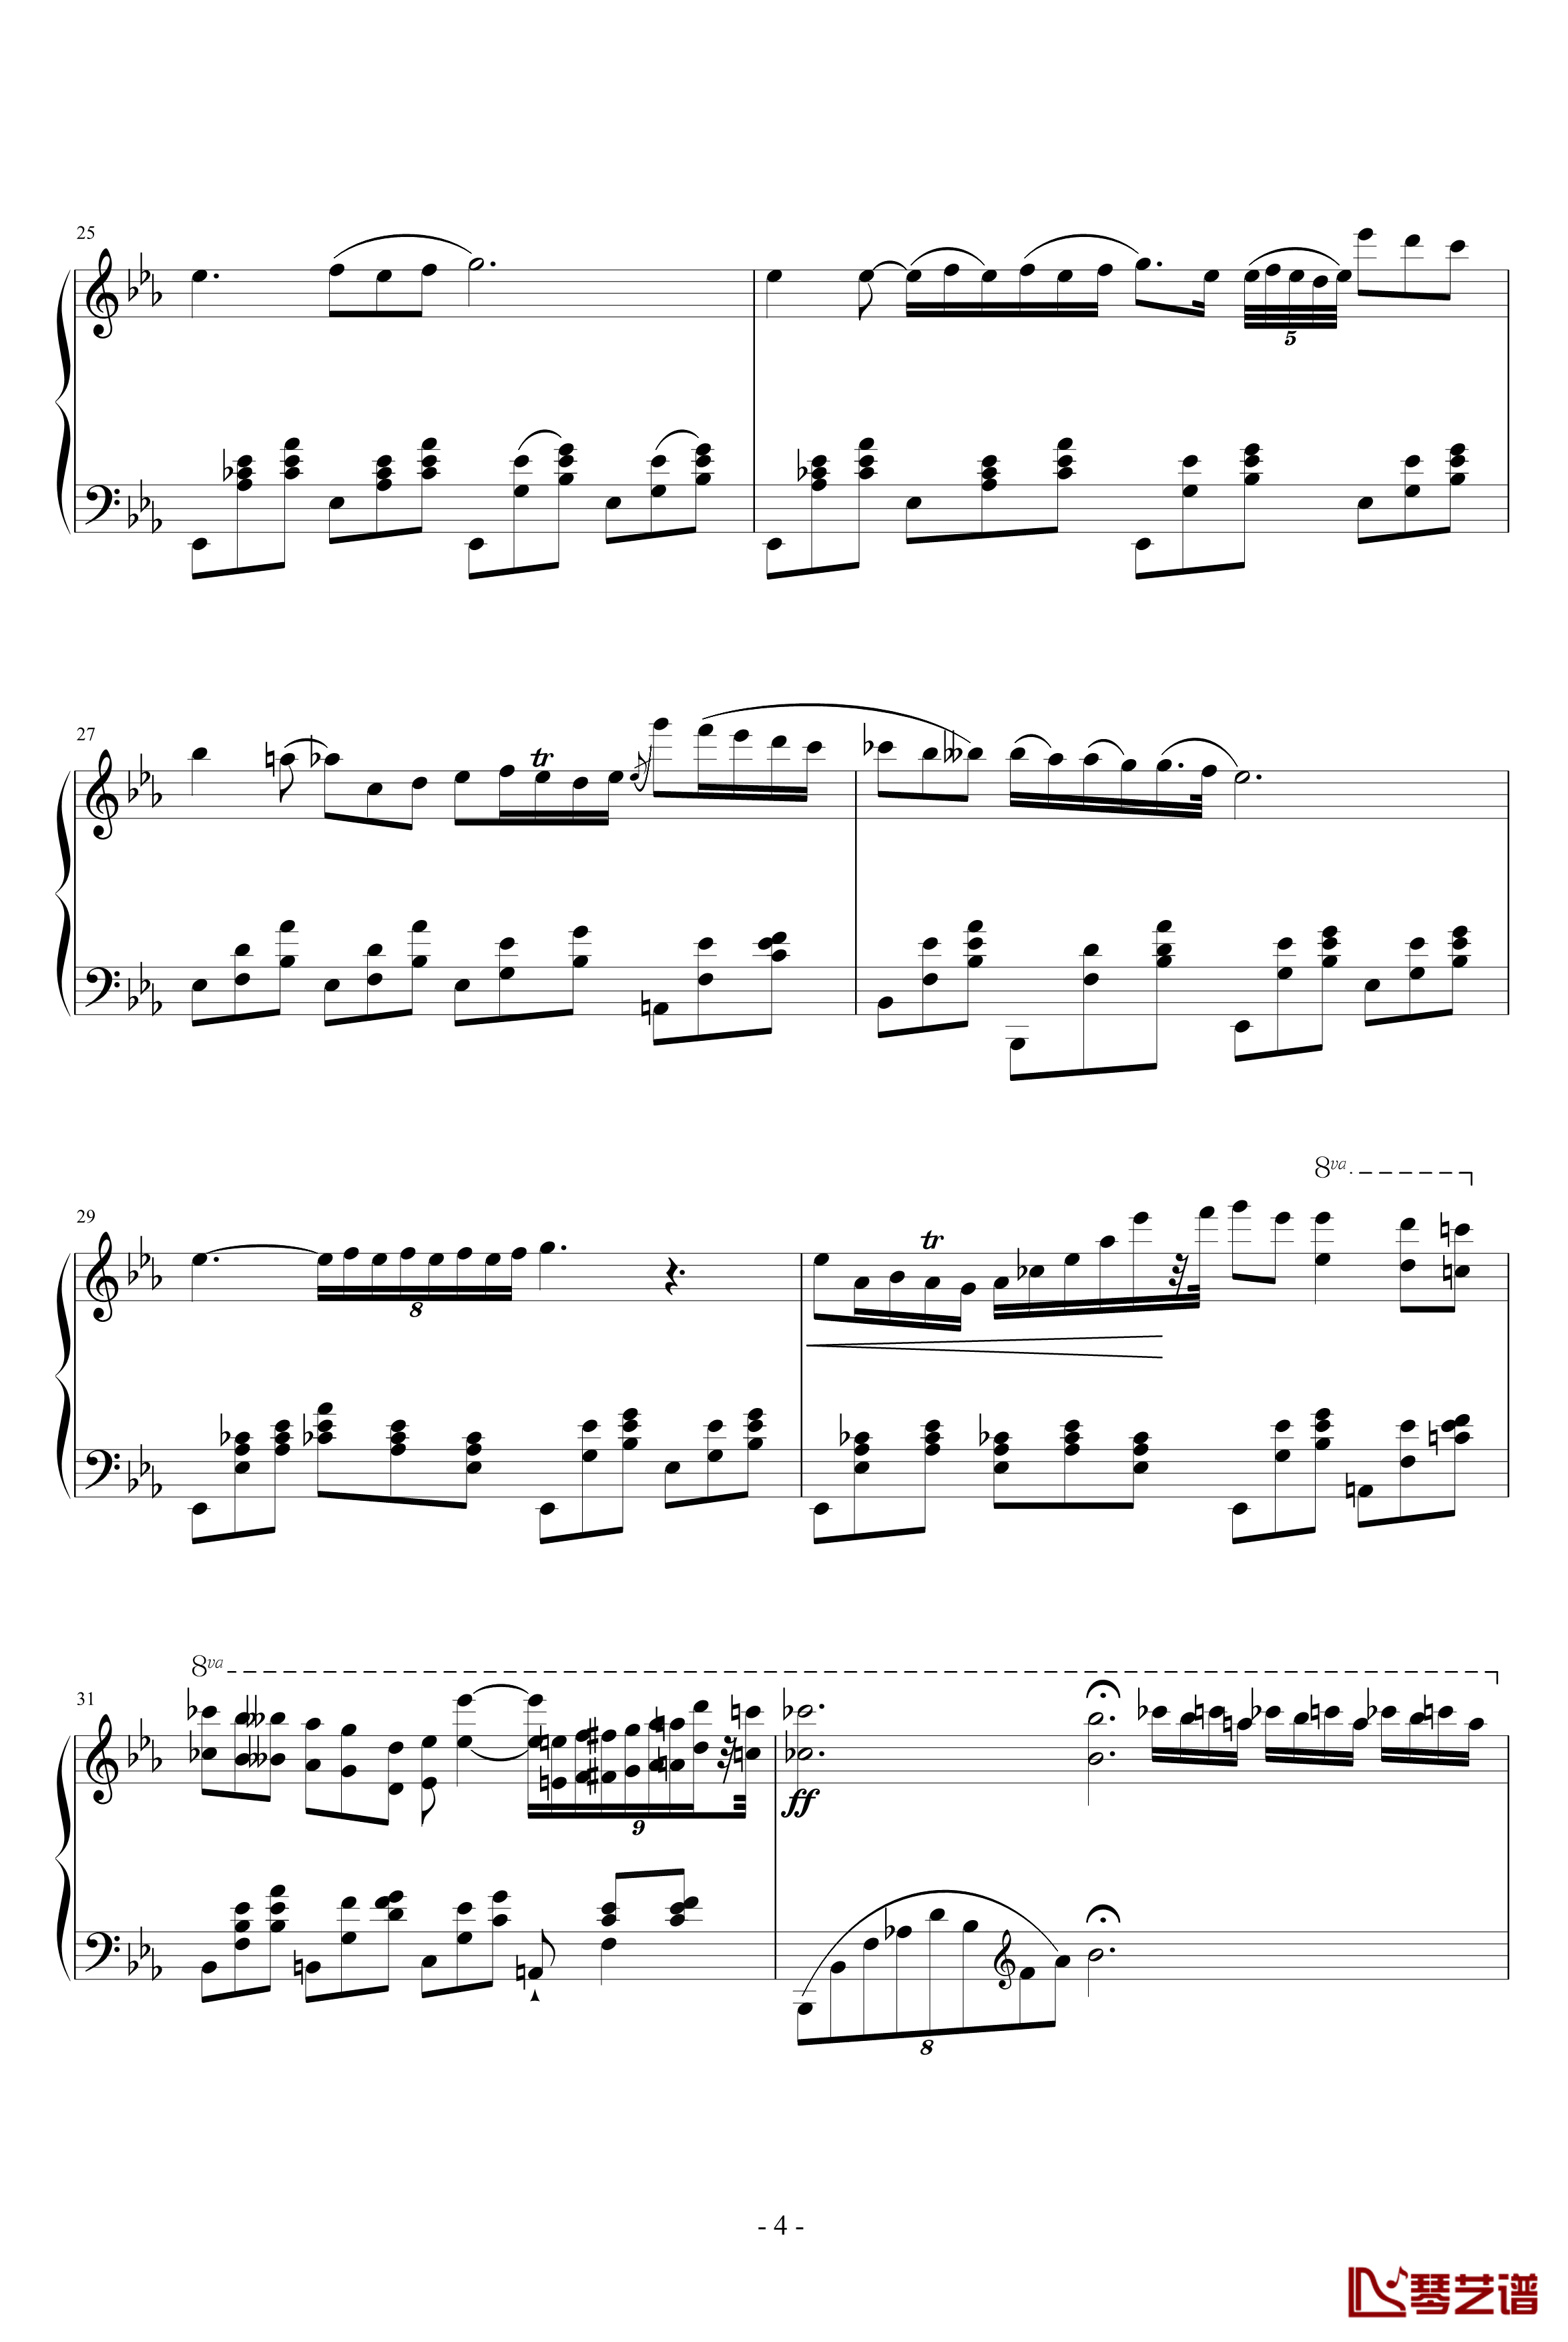 降E大调夜曲钢琴谱-另一个版本-肖邦-chopin4